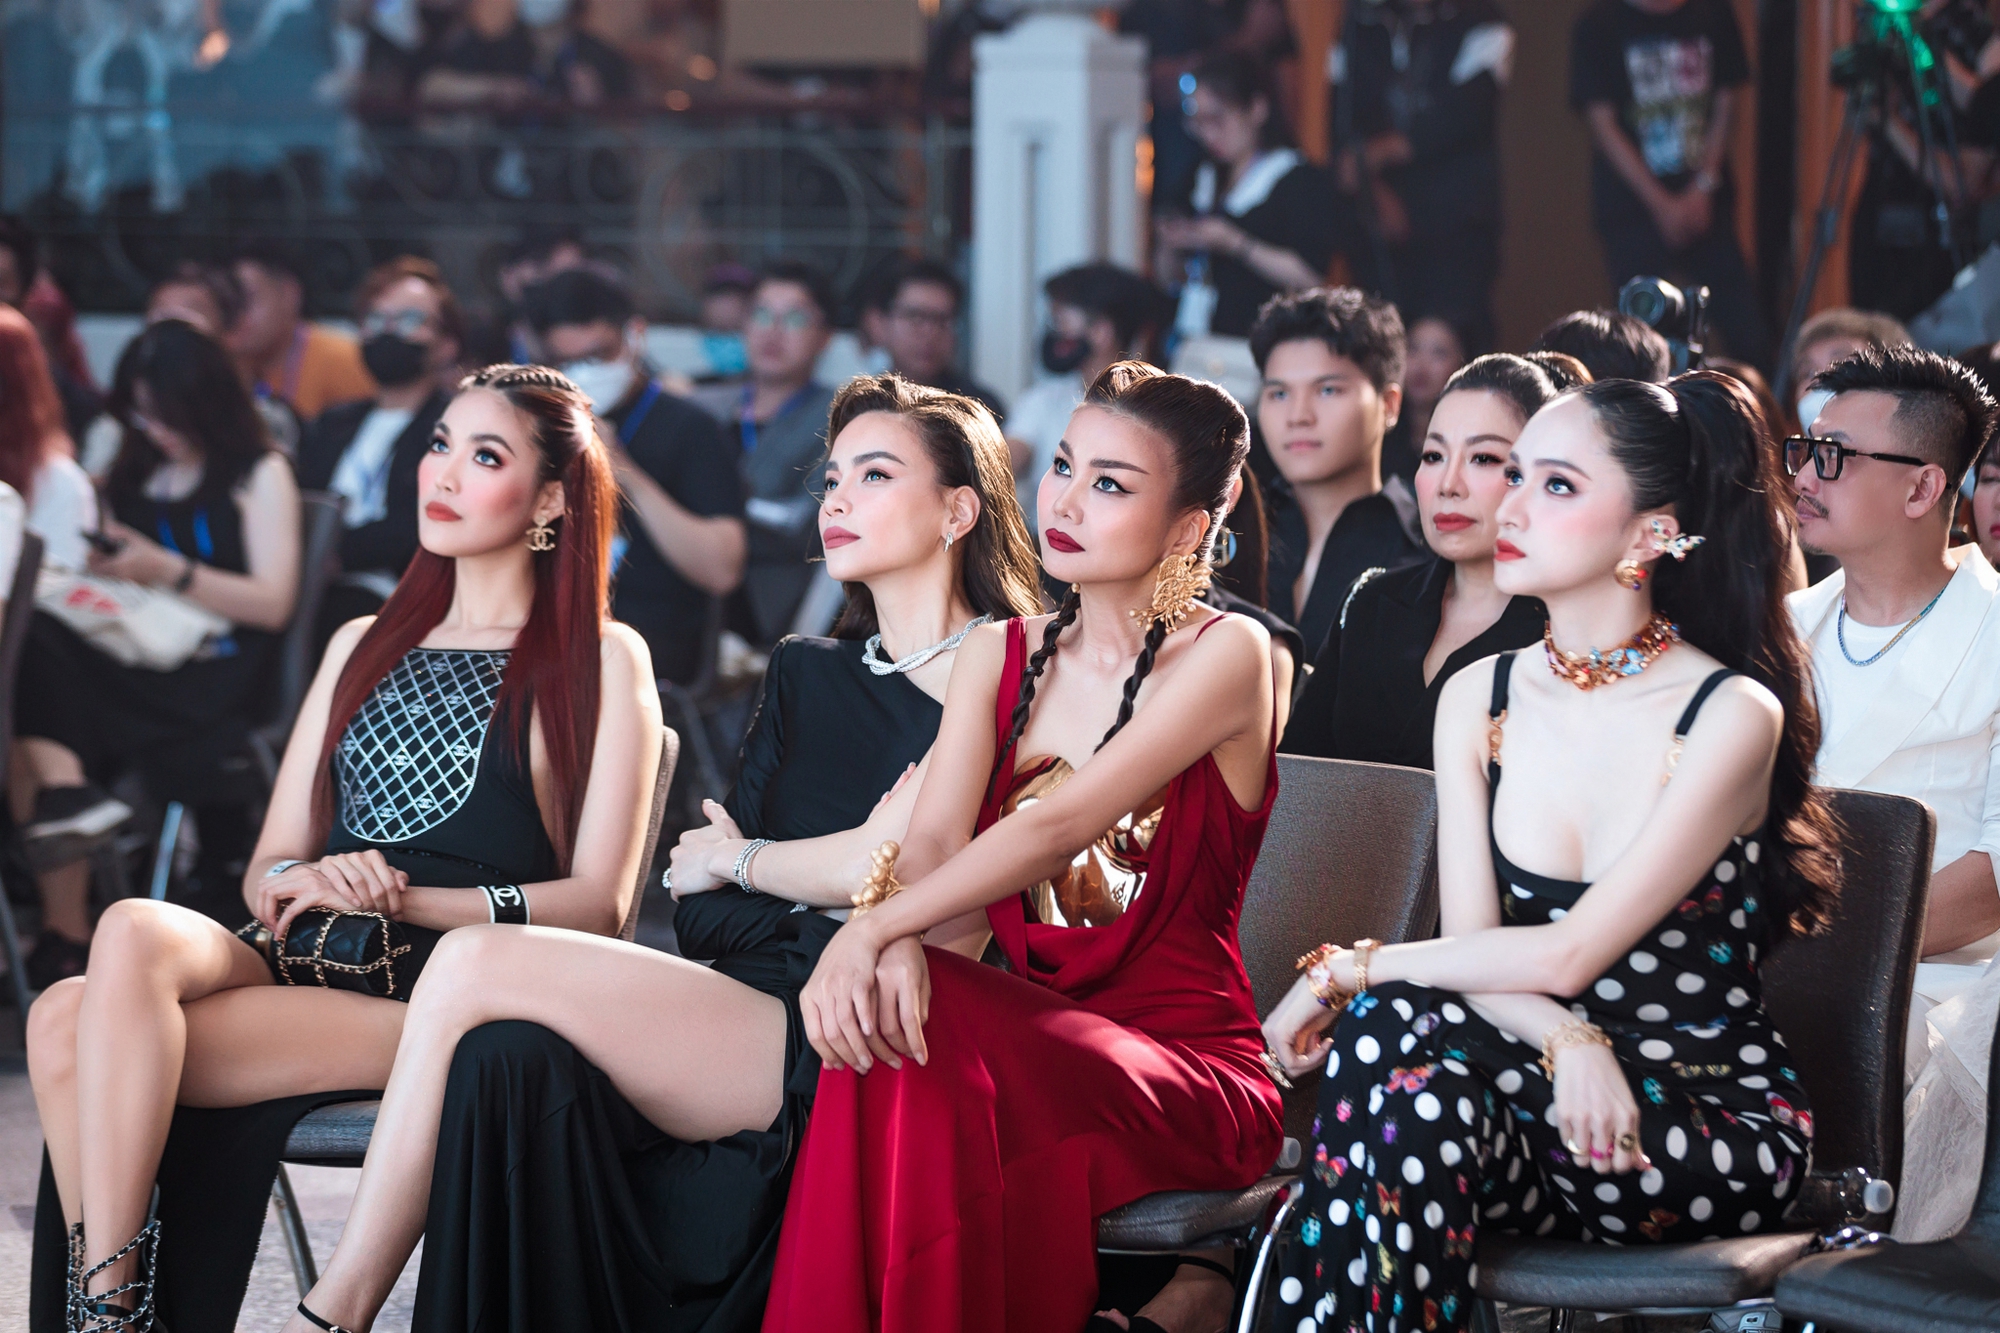 Hồ Ngọc Hà, Thanh Hằng, Hương Giang và Lan Khuê hóa nữ thần trong buổi ra mắt cuộc thi người mẫu - Ảnh 3.